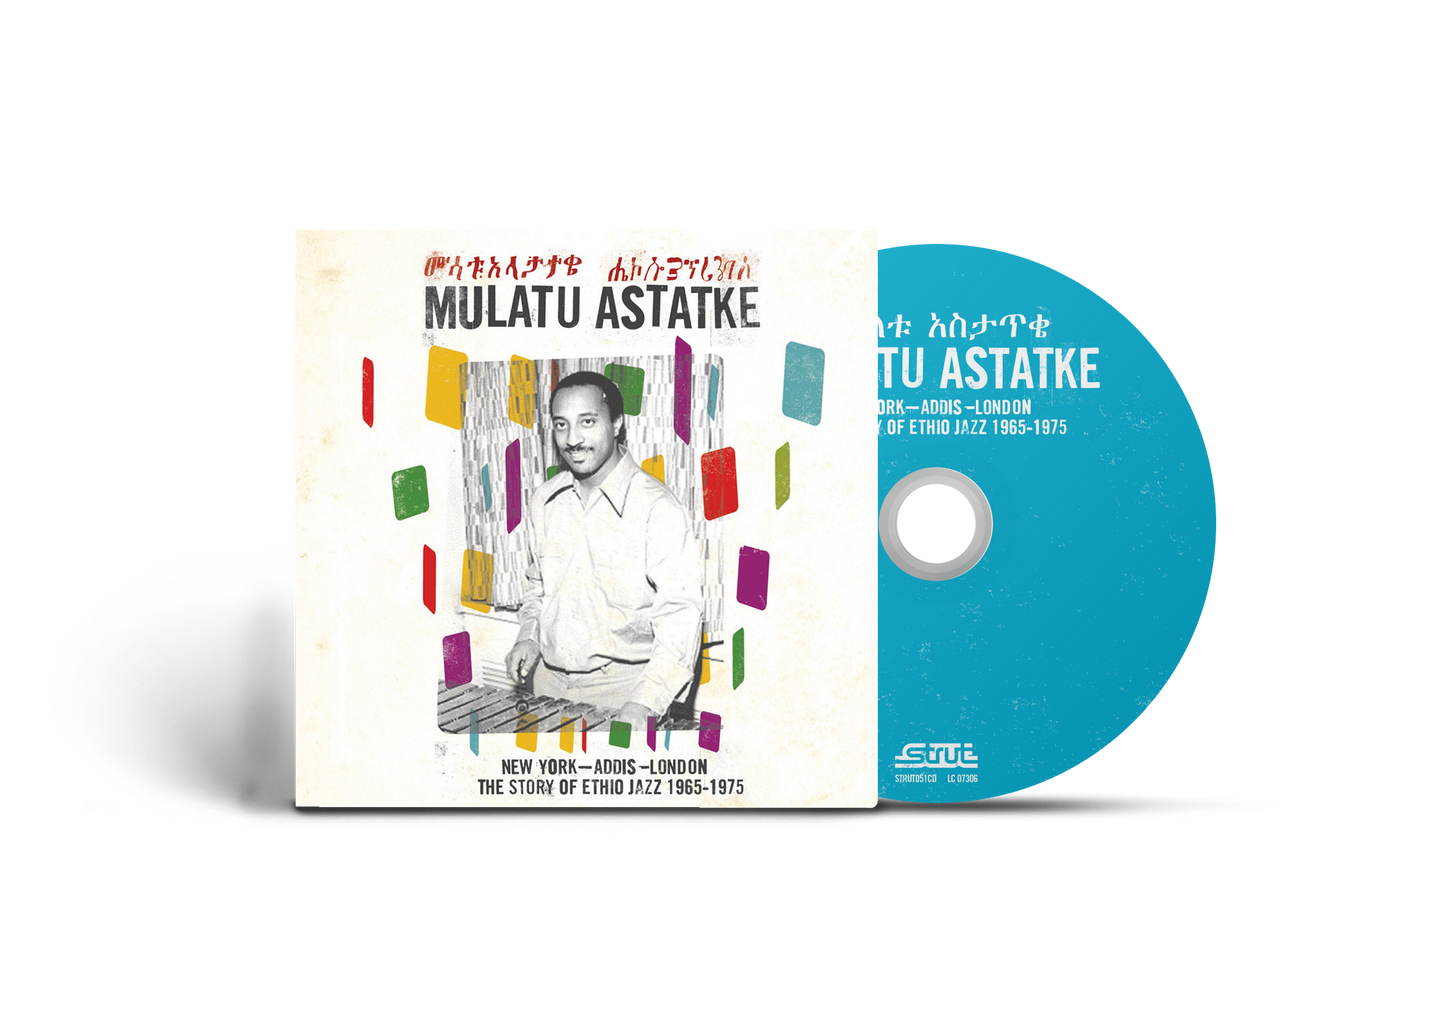 Mulatu Astatke - New York - Addis - London The Story of Ethio Jazz 1965-1975